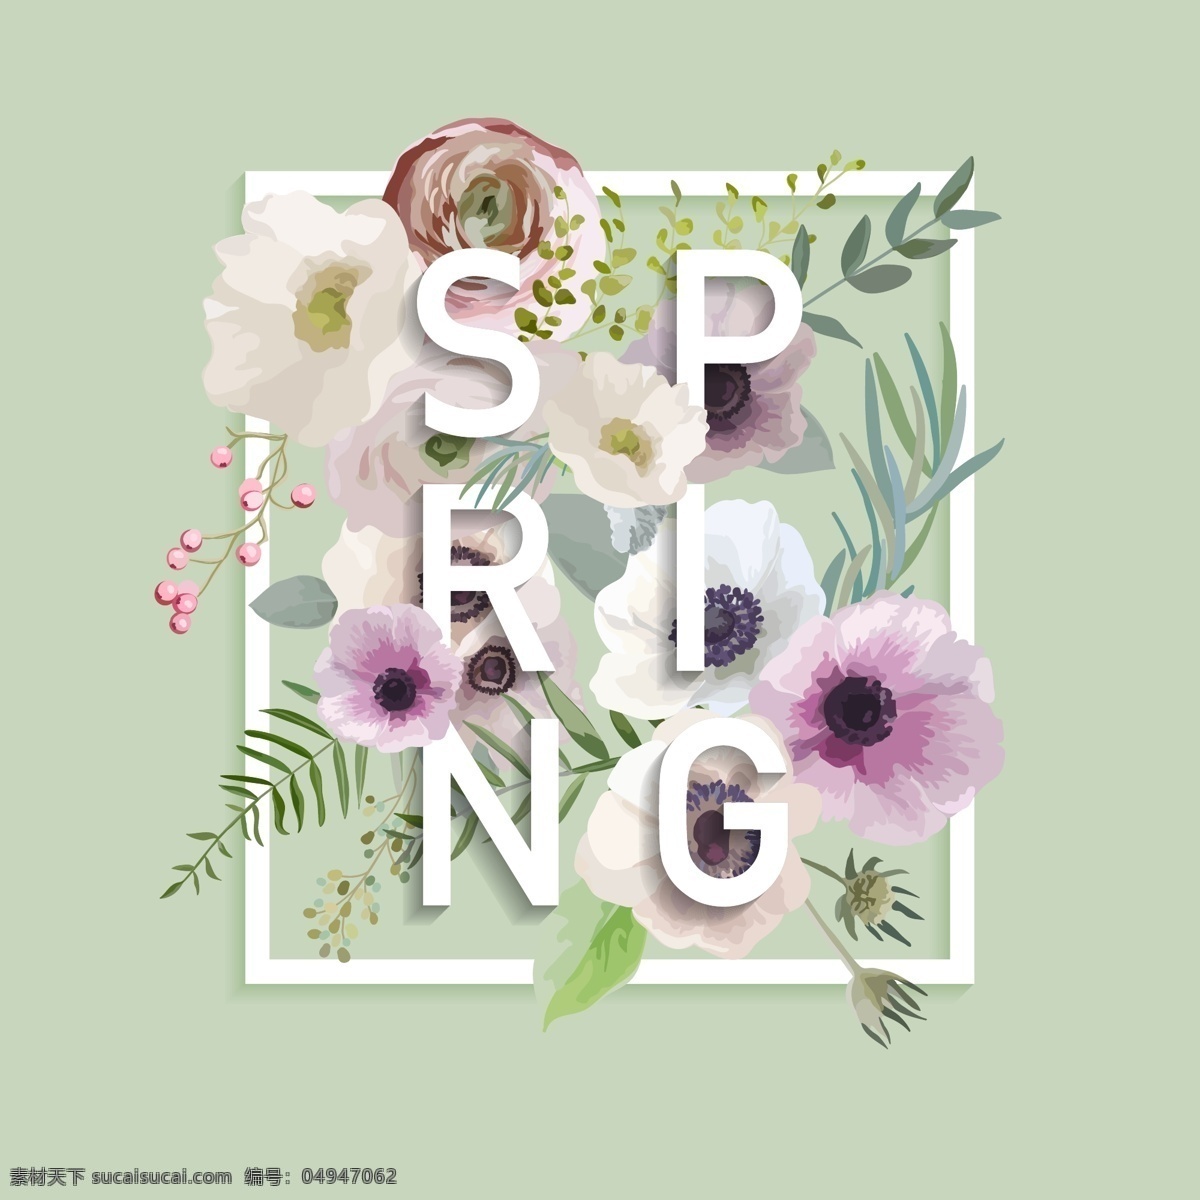 春天 绿色 夏 花卉 海报 矢量 小清新 立体 合成字体 创意 穿插 花朵 卡通 填充 插画 背景 广告 包装 印刷 夏天